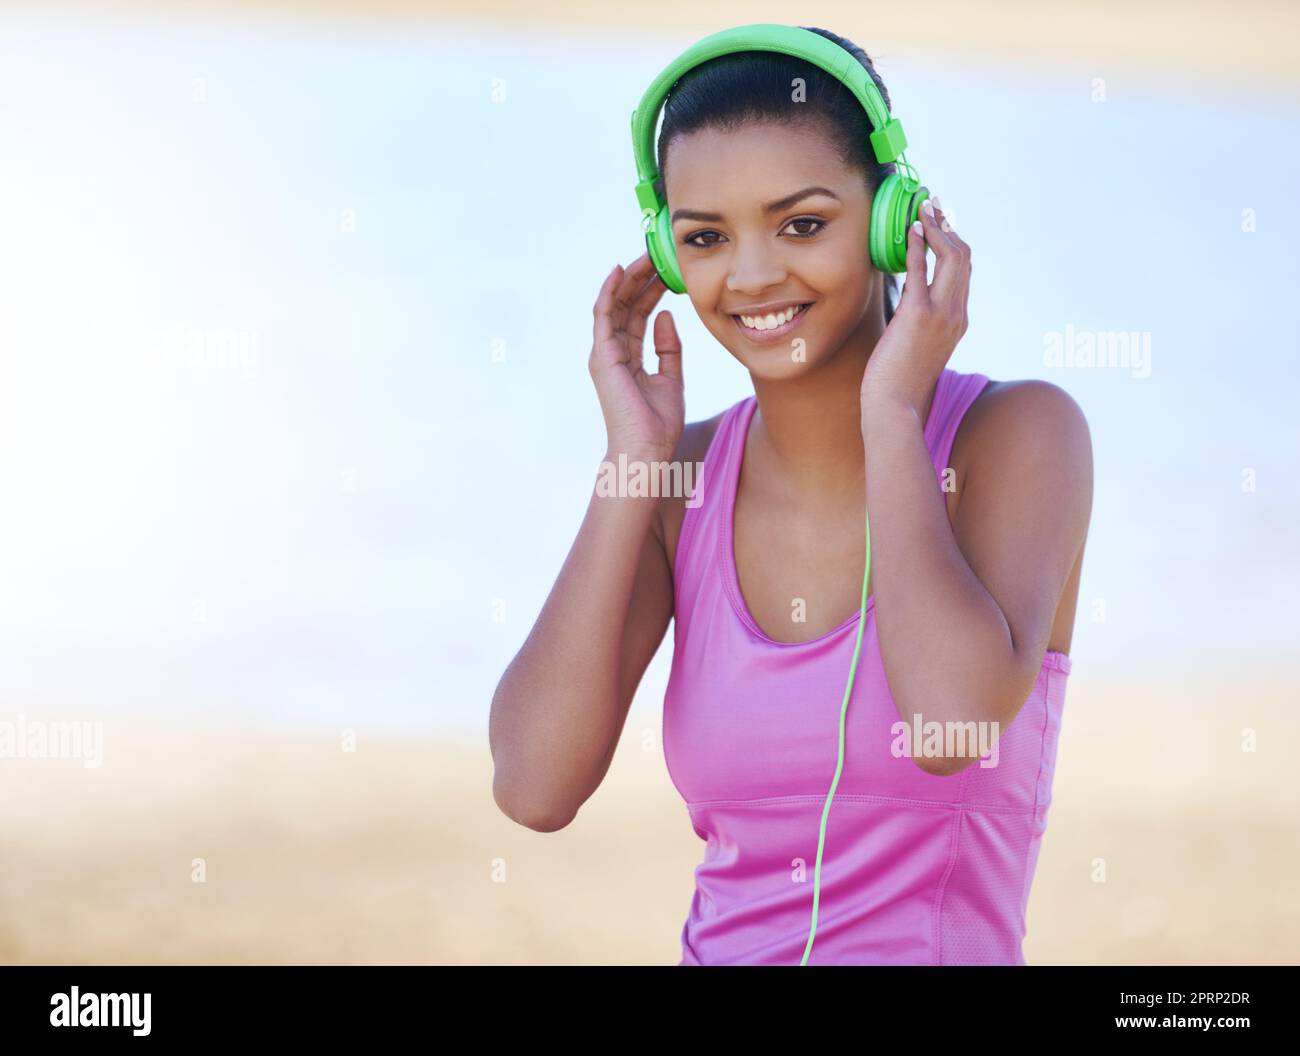 Musik hält mich motiviert. Porträt einer sportlichen jungen Frau, die im Freien Kopfhörer trägt. Stockfoto